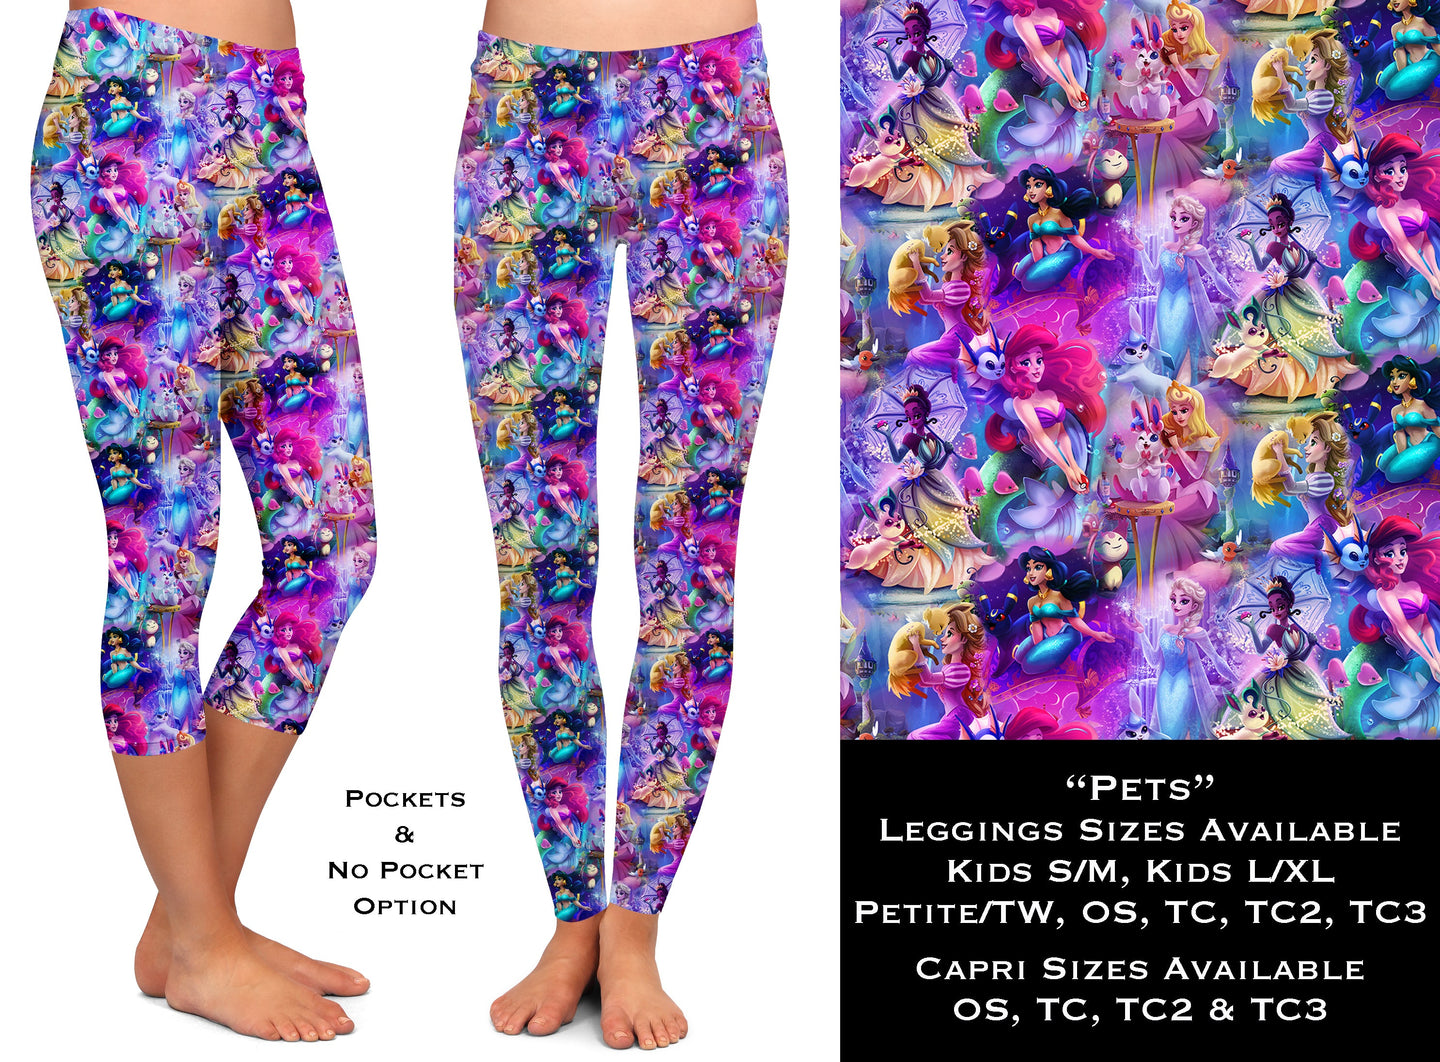 Pets - Legging & Capri